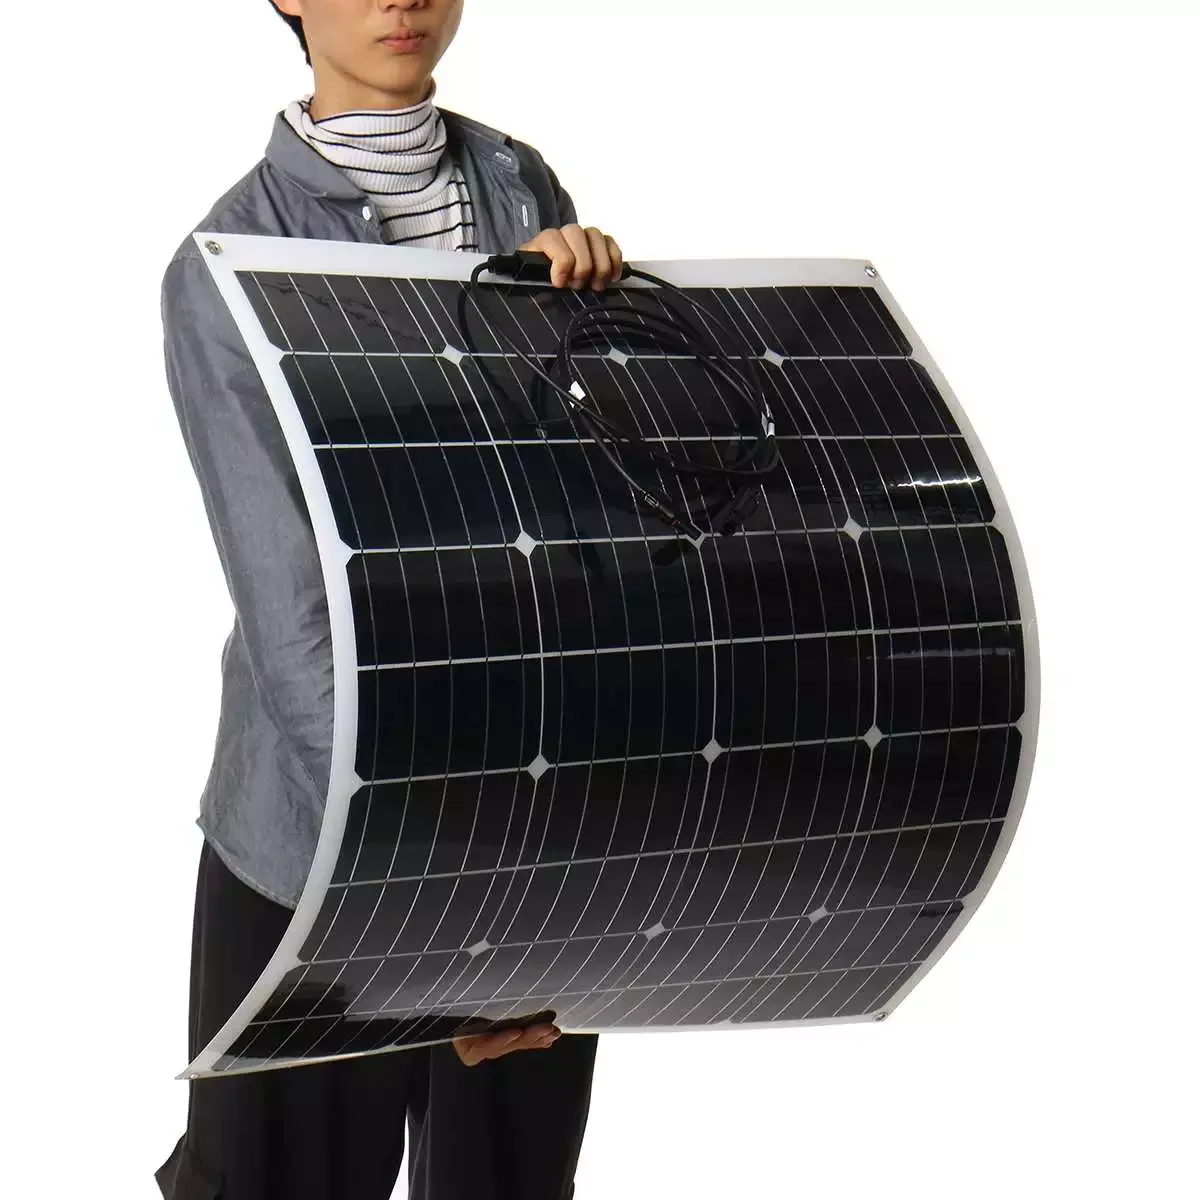 

Гибкая монокристаллическая солнечная панель 18 в 1000 Вт для автомобиля/лодки/дома, солнечная батарея может заряжать водонепроницаемую солне...